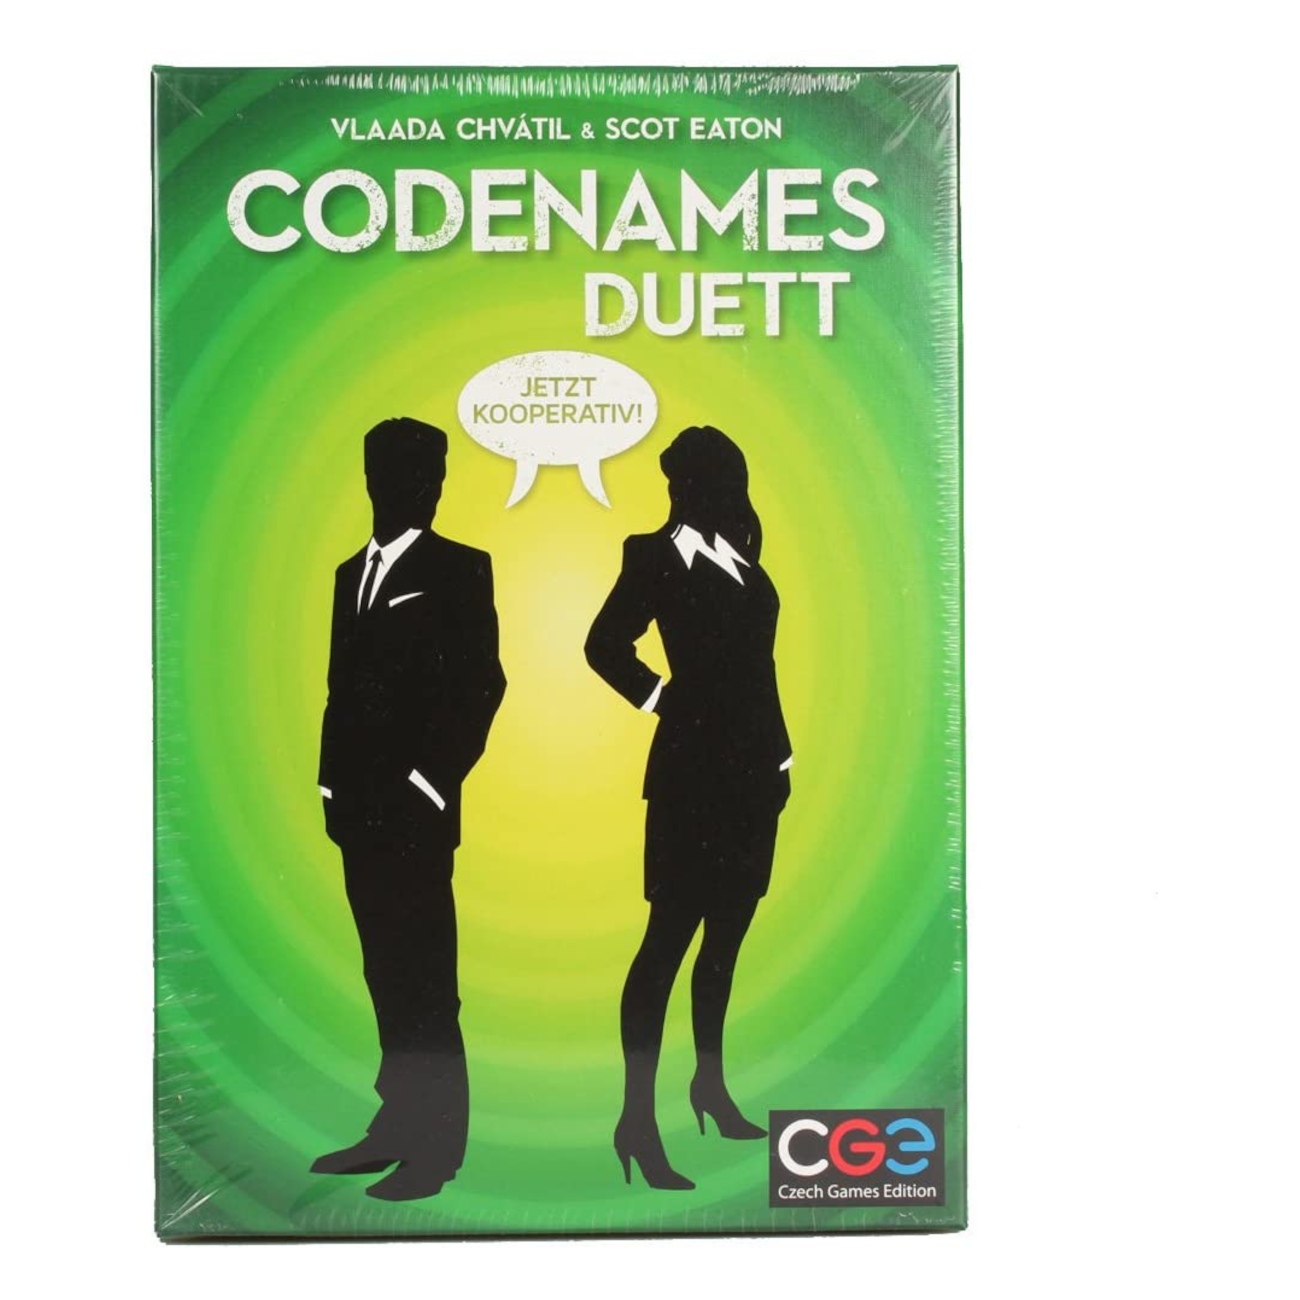 Codenames - Duett